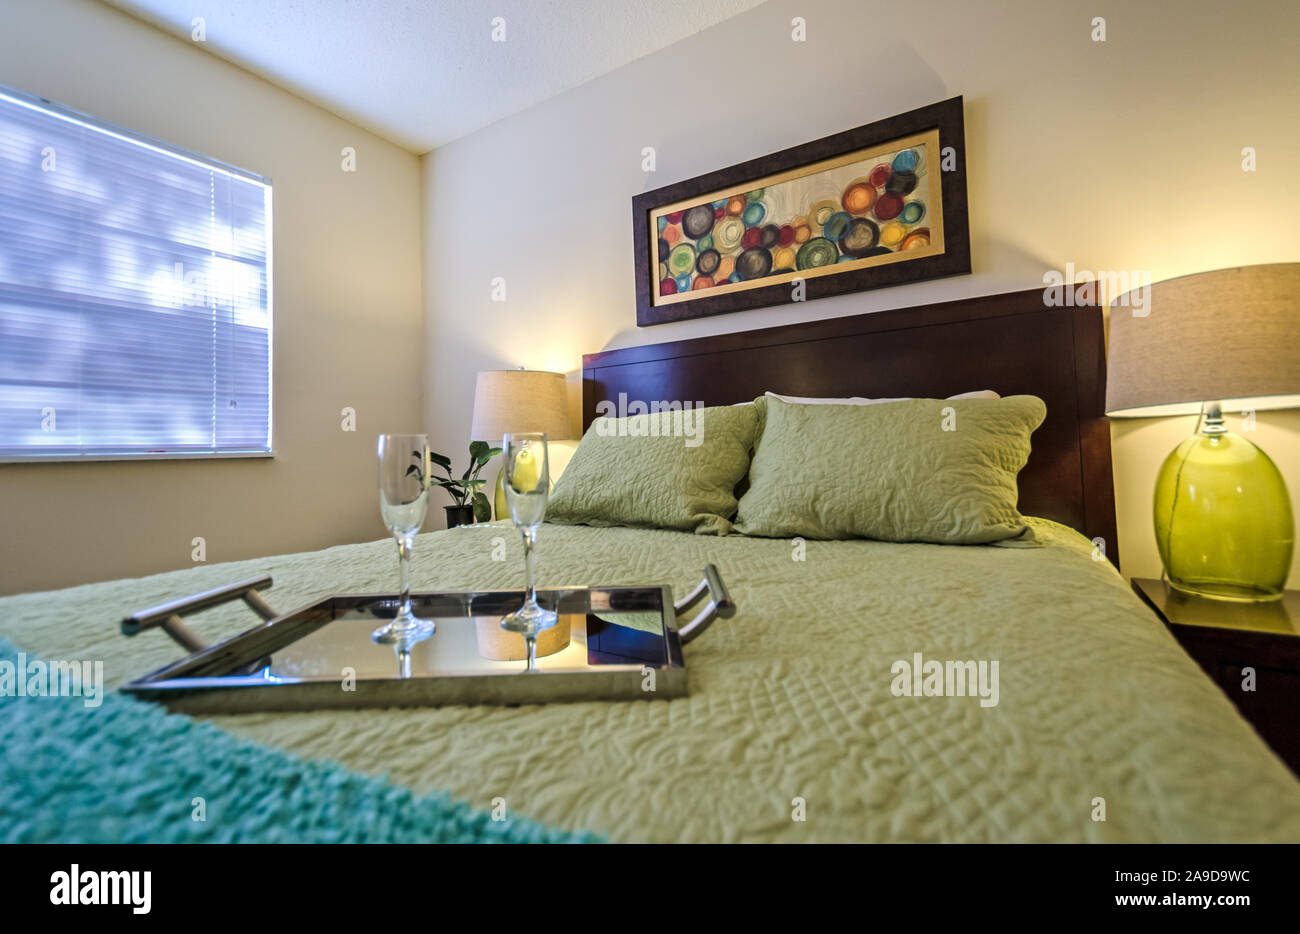 Ein Fach mit champagnergläser sitzt auf einem Bett in einem Schlafzimmer im Herbst Wald Apartments, auf Foreman Road in Mobile, Alabama. Stockfoto